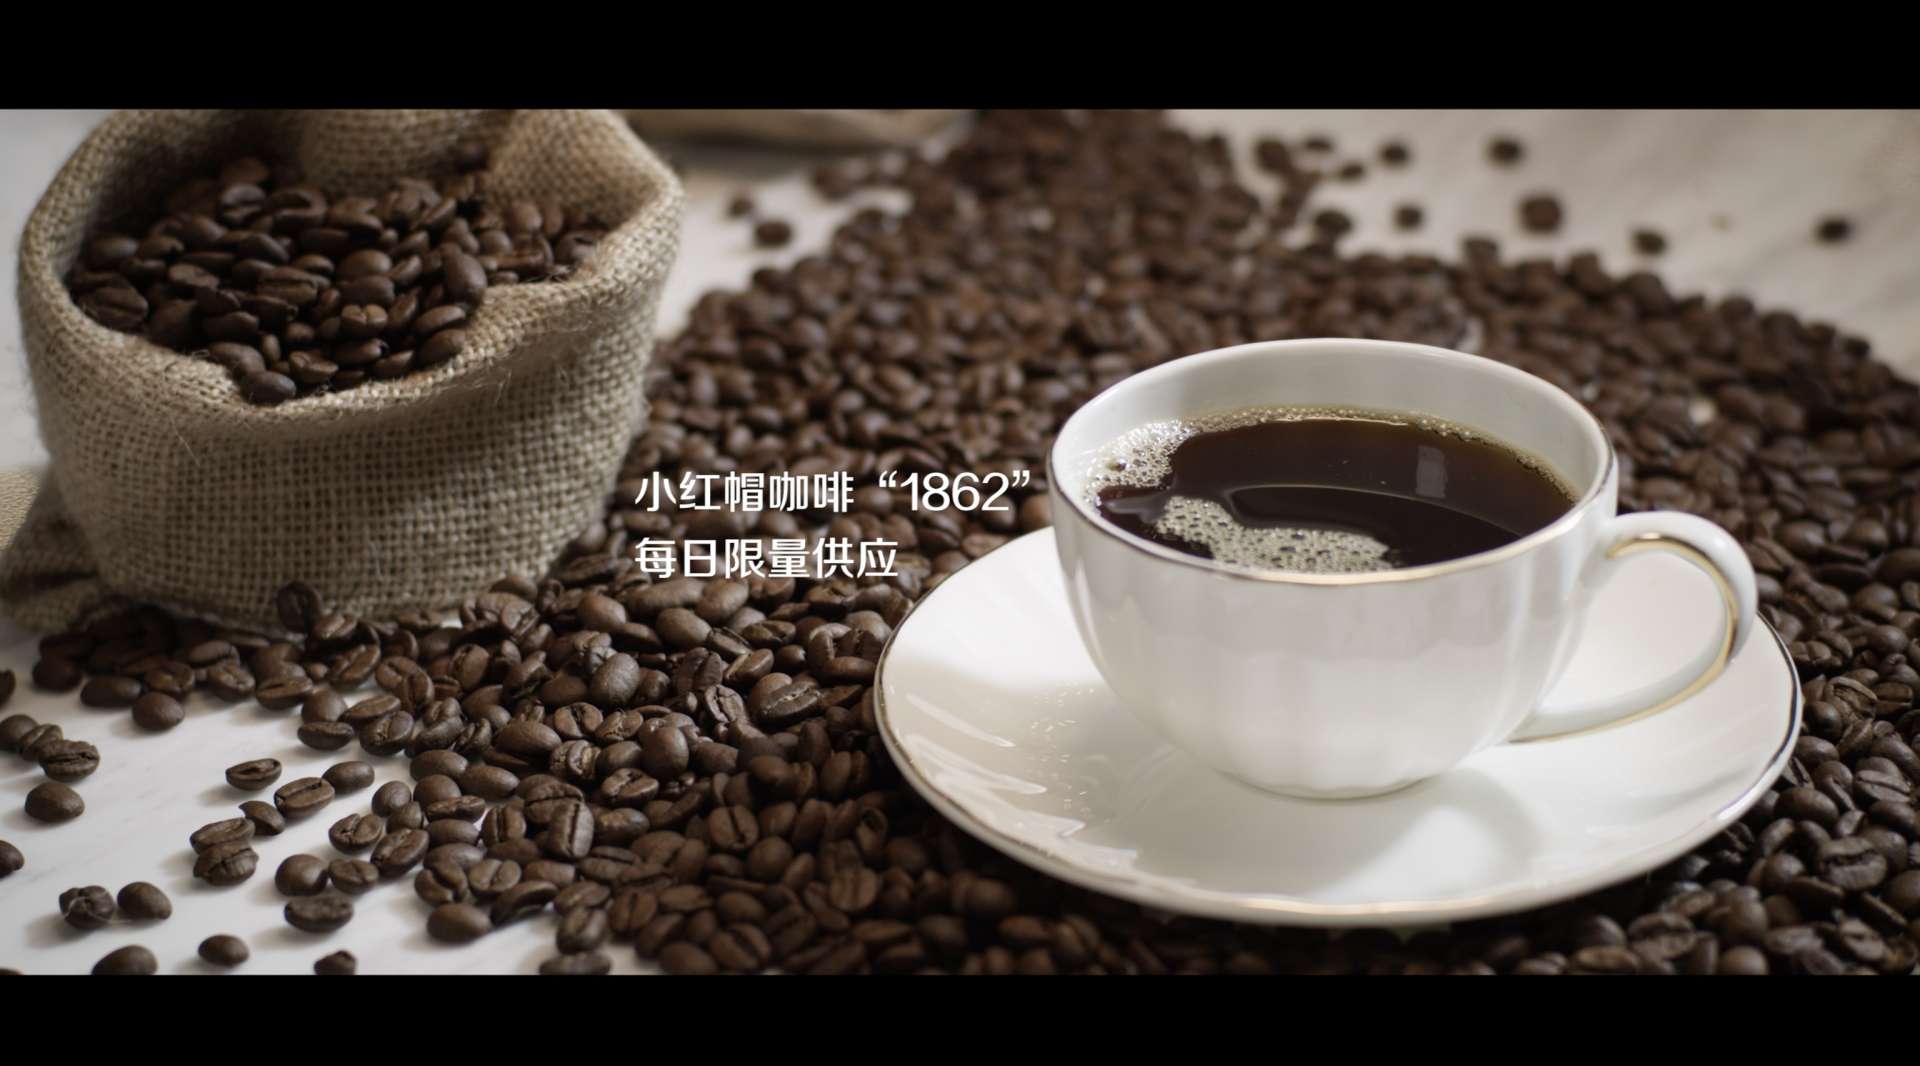 咖啡宣传片-桂语听澜&小红帽咖啡1862